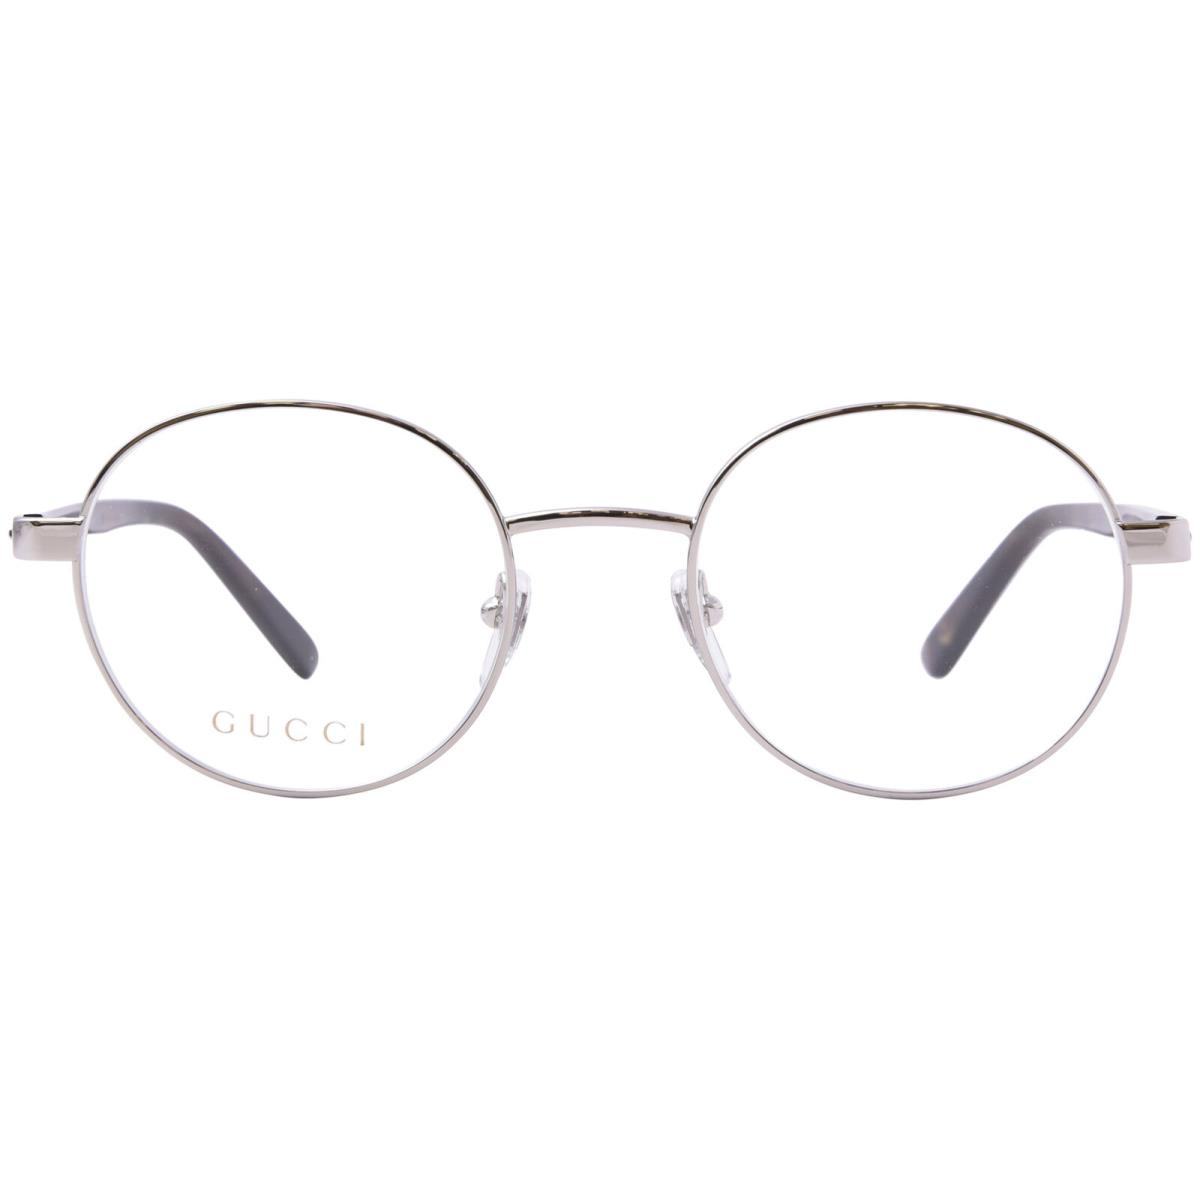 Gucci GG1585O 002 Eyeglasses Frame Men`s Silver/havana Full Rim Round Shape 51mm